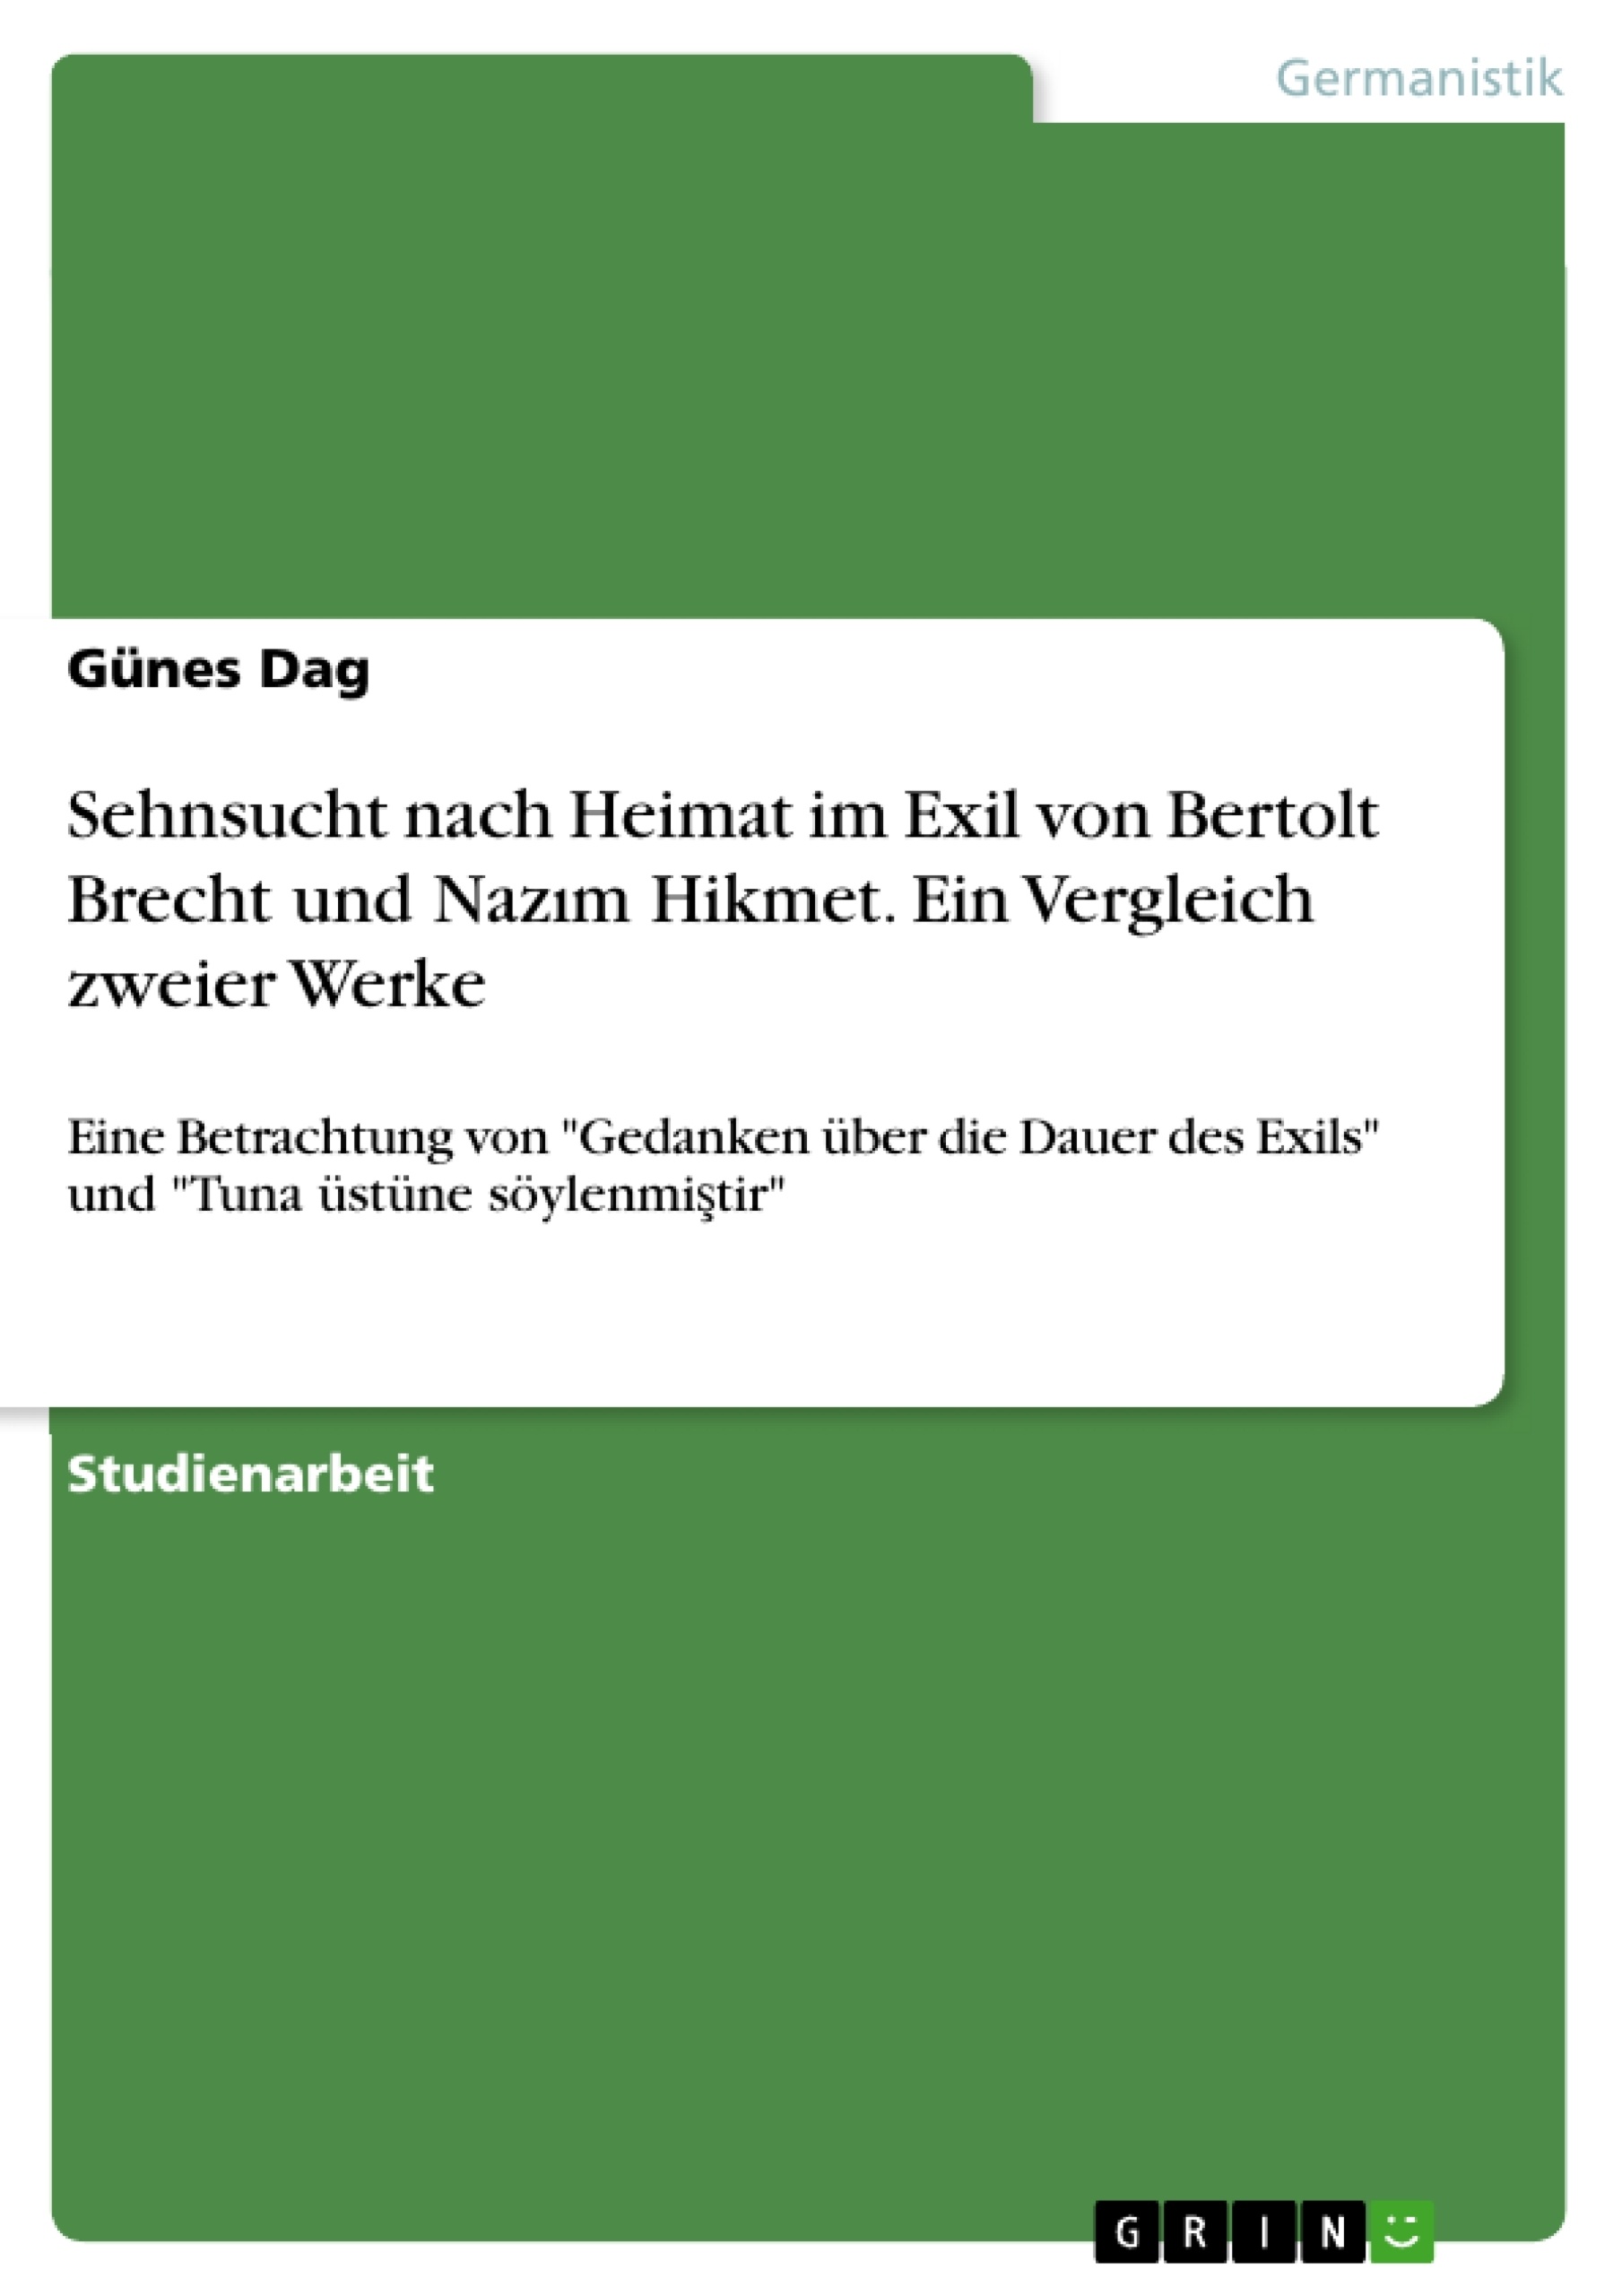 Título: Sehnsucht nach Heimat im Exil von Bertolt Brecht und Nazım Hikmet. Ein Vergleich zweier Werke